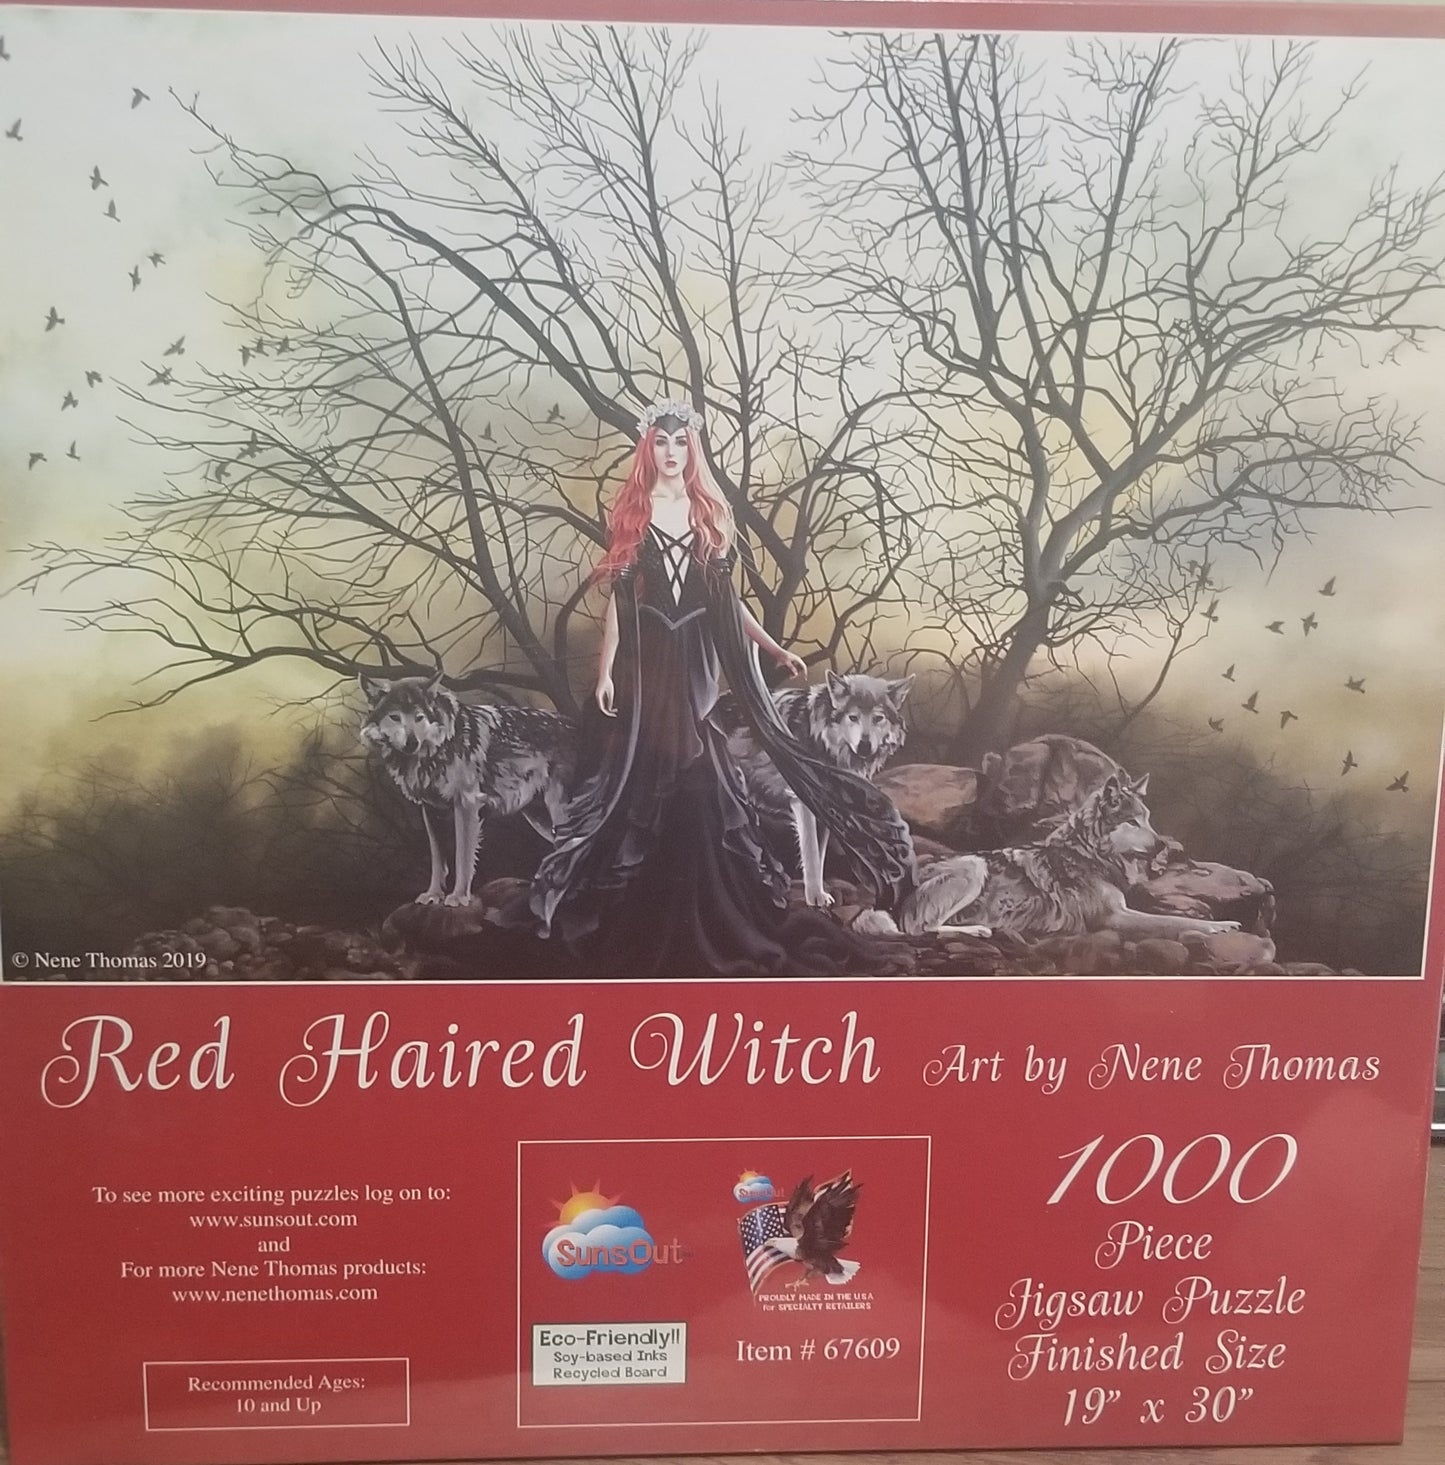 Rødhåret heks af Nene Thomas, 1000 brikkers puslespil